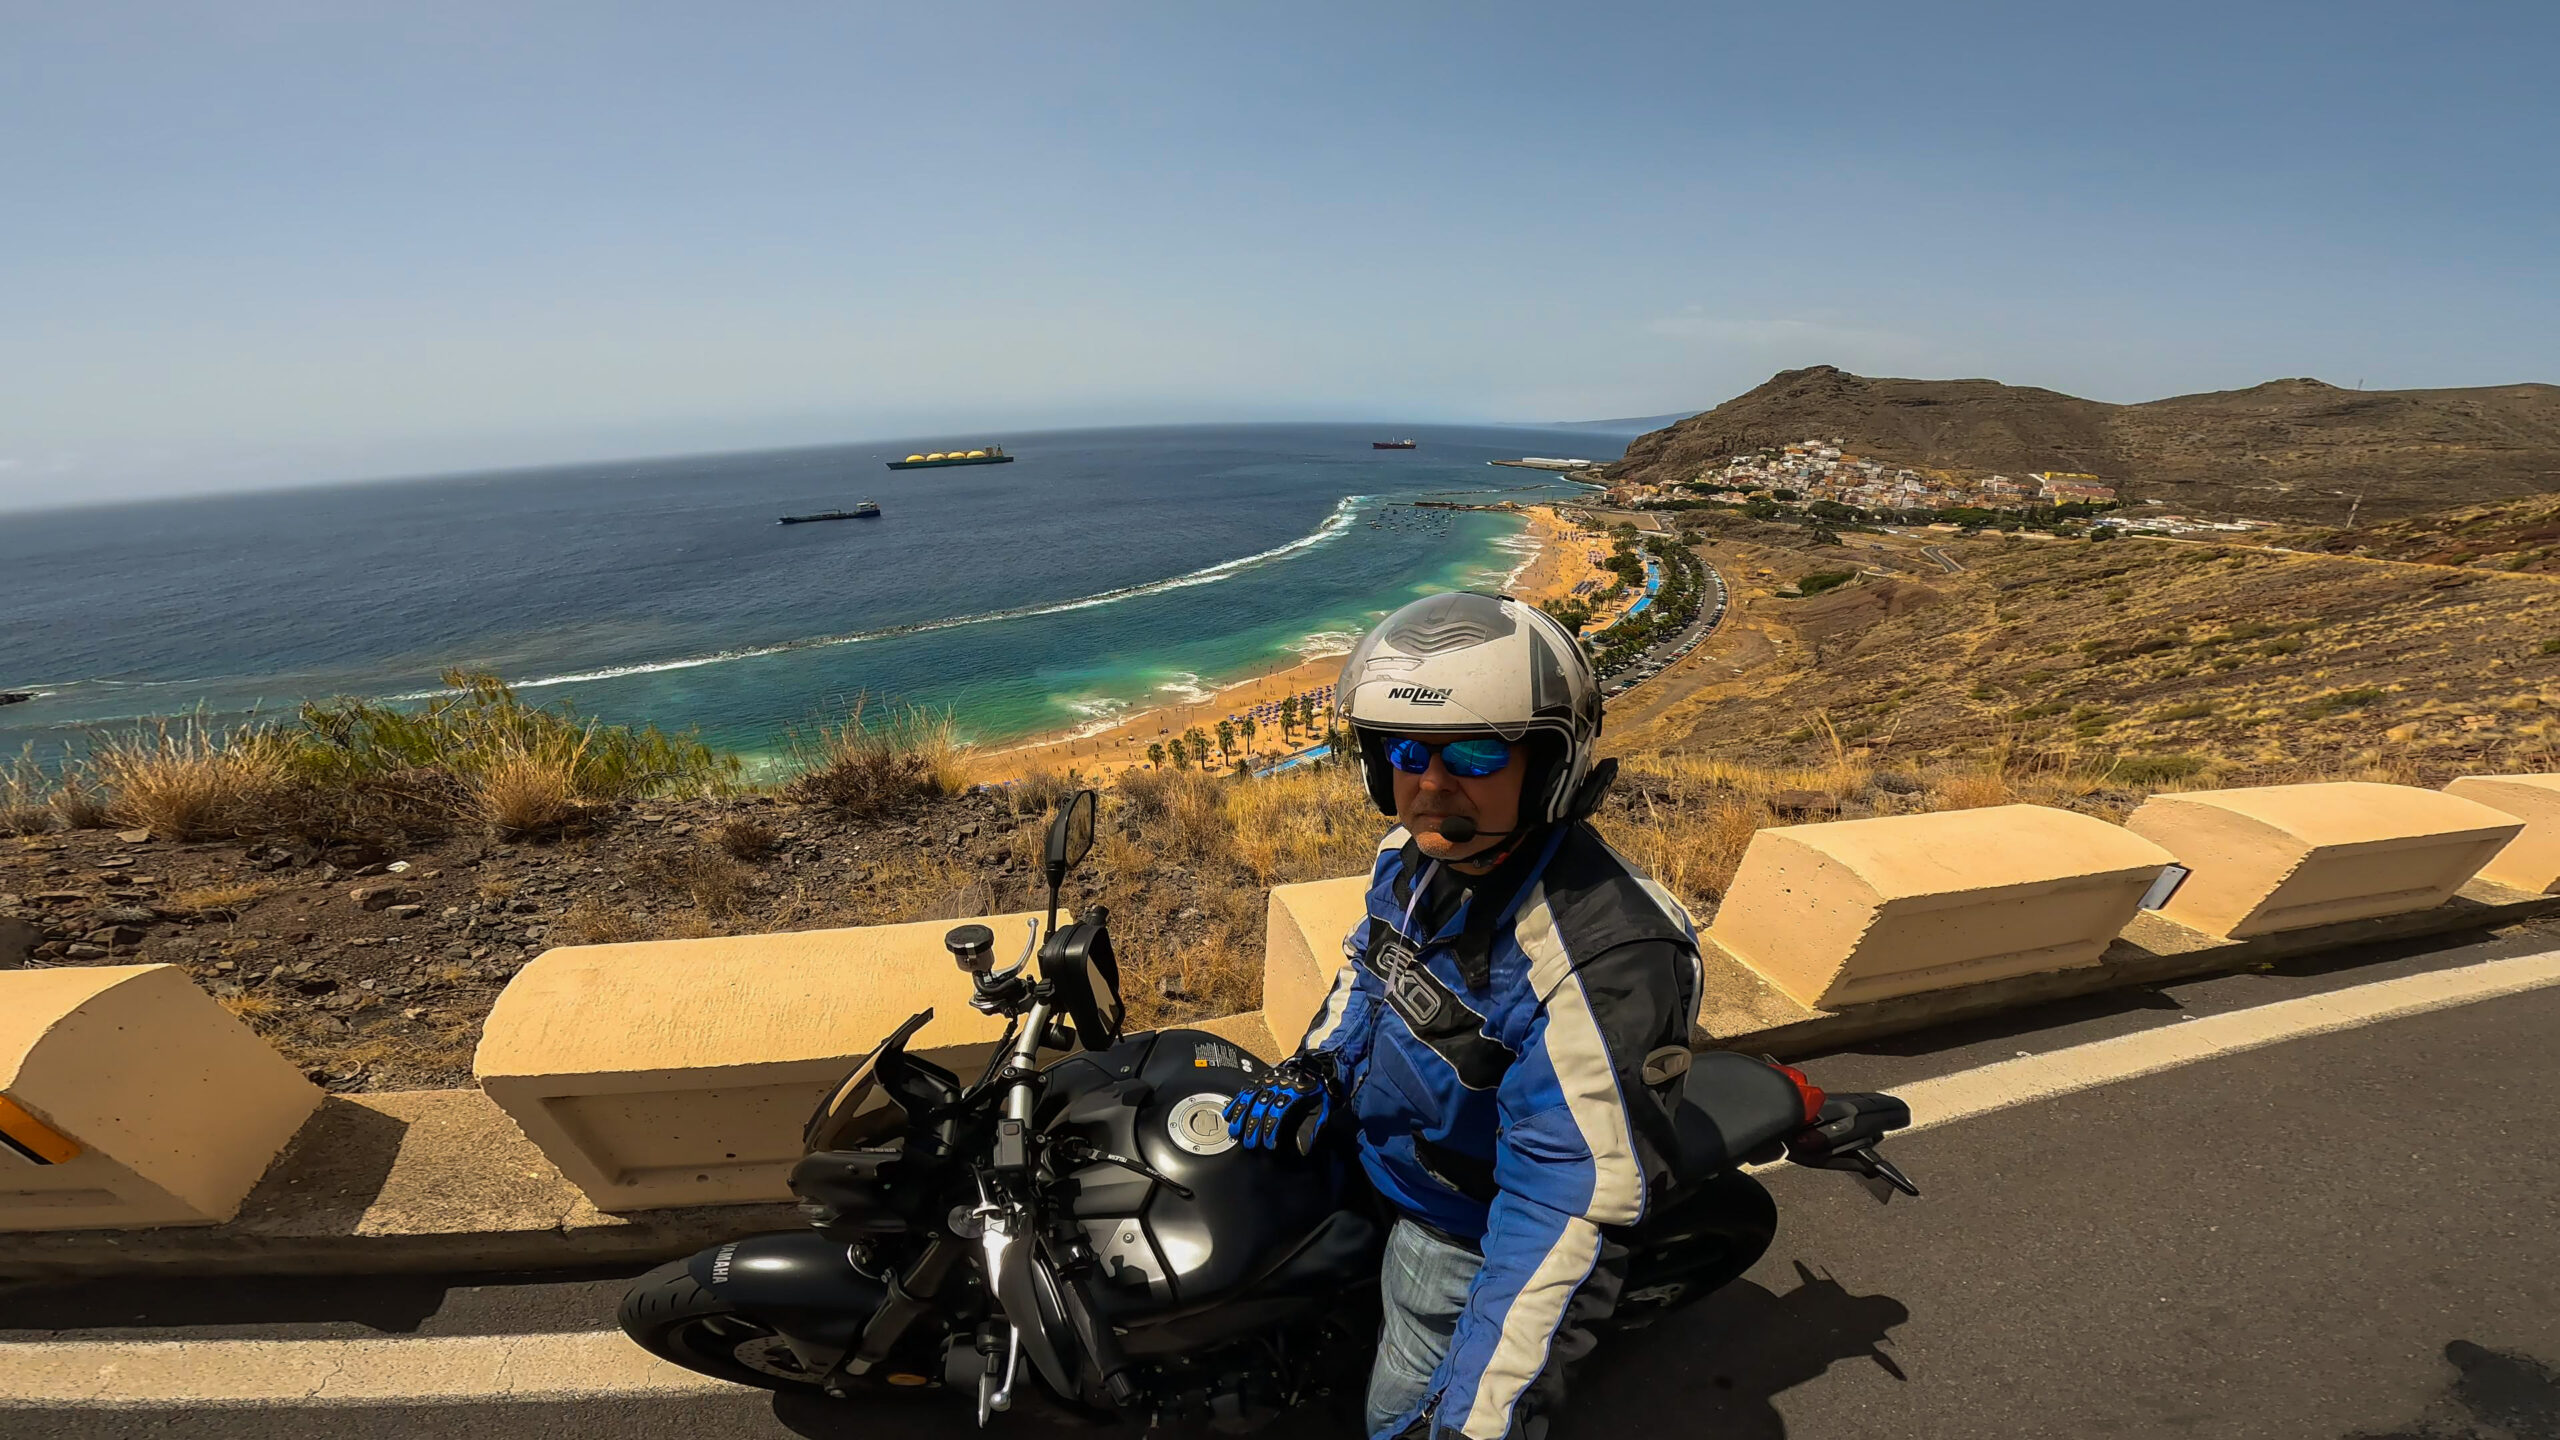 Noleggiare la moto a Tenerife